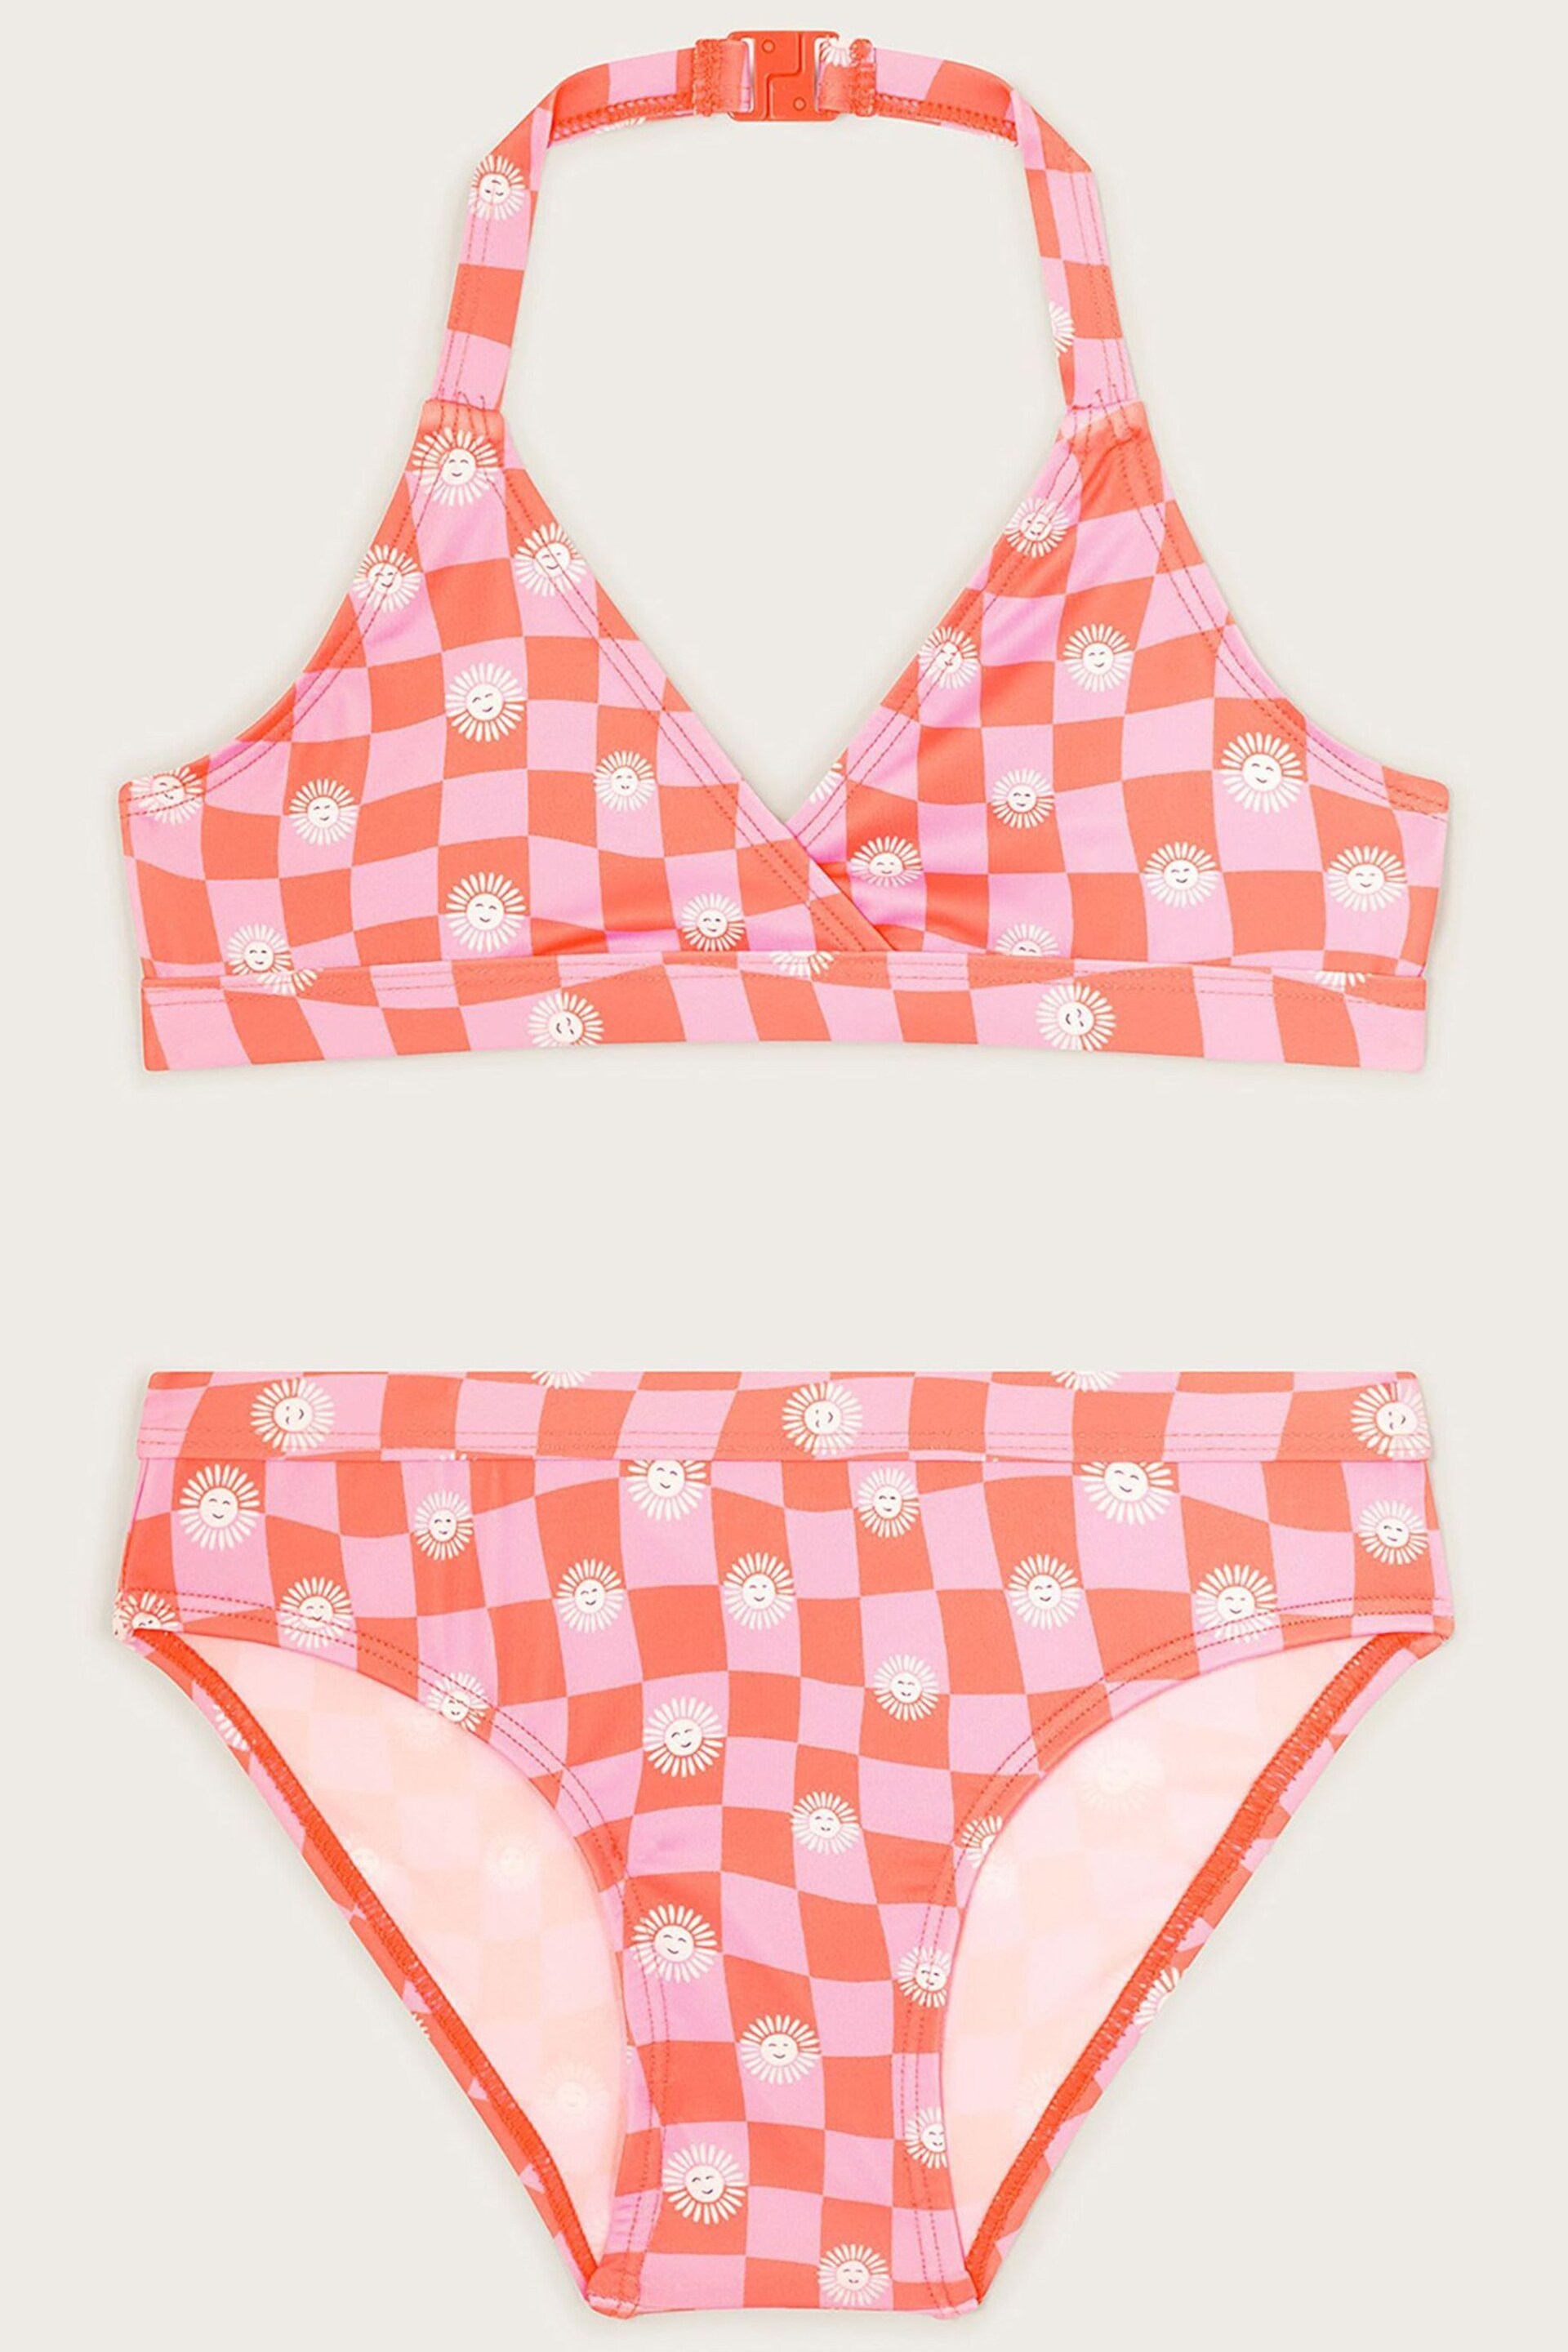 Monsoon Pink Check Bikini Set - Image 1 of 3